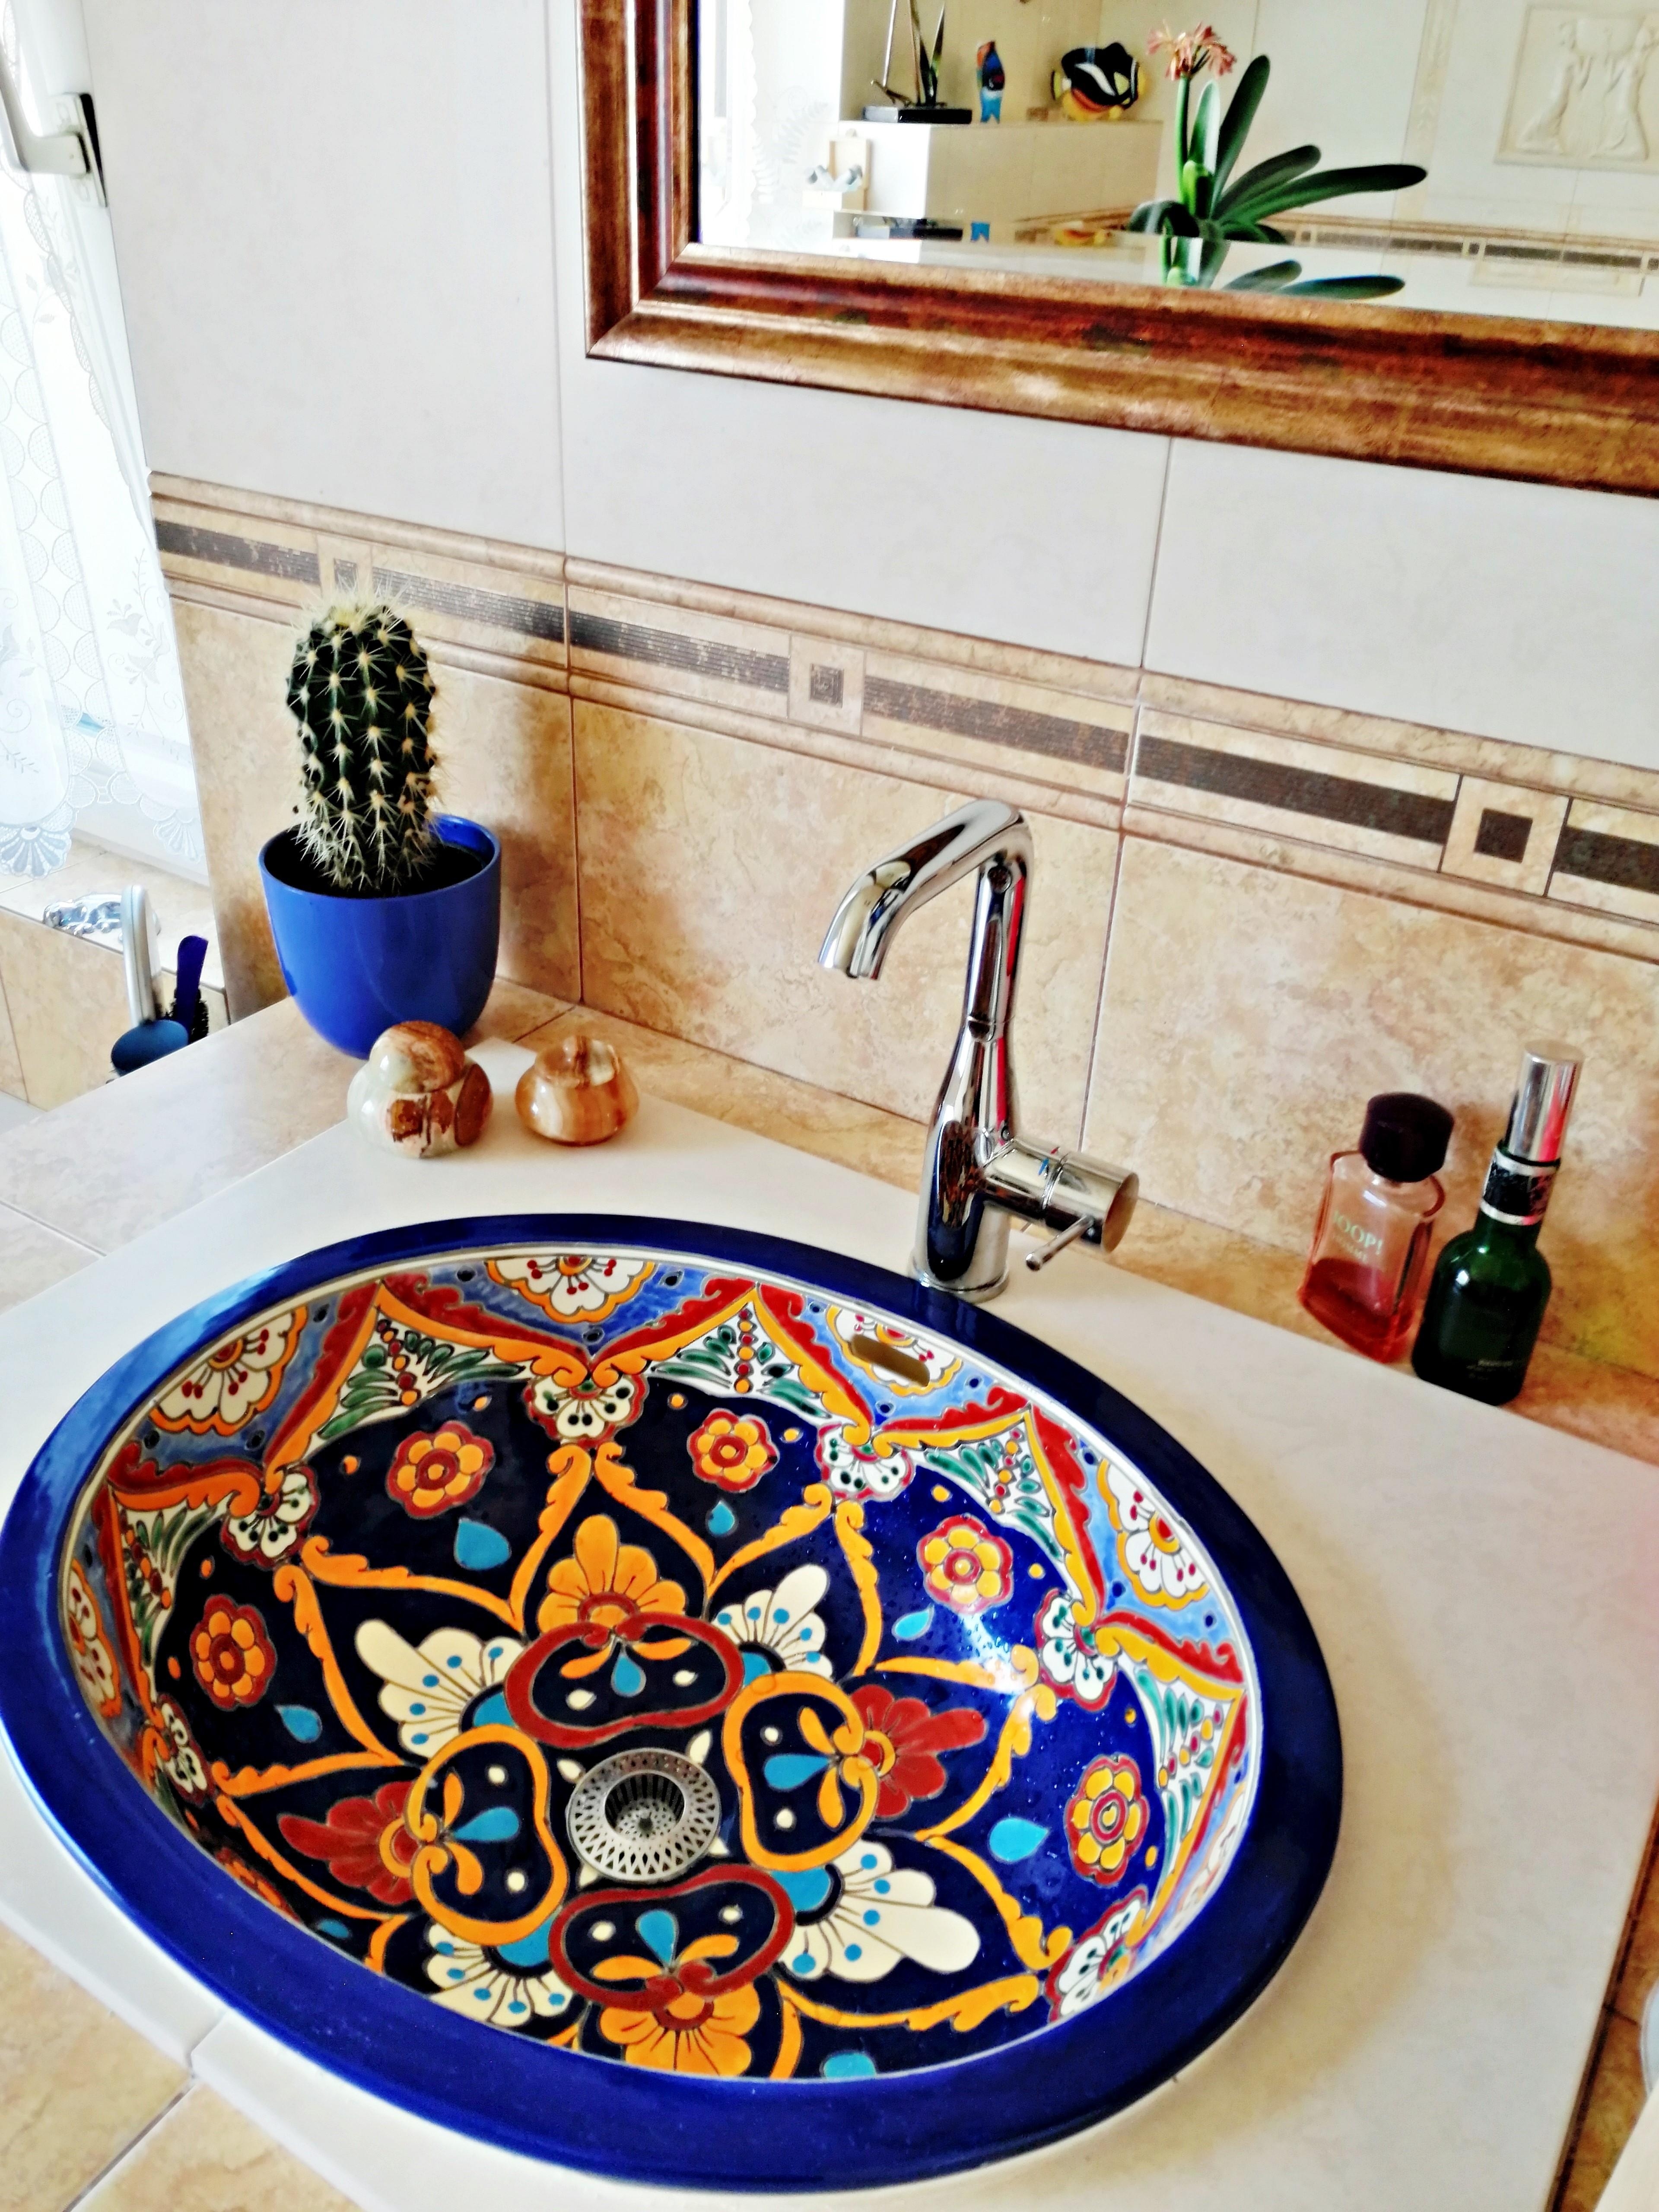 Buntes #waschbecken aus #mexiko von #mexambiente #handbemalt #Badezimmer #Gästewc #Gästebad #gemustert #farbenfroh #bunt